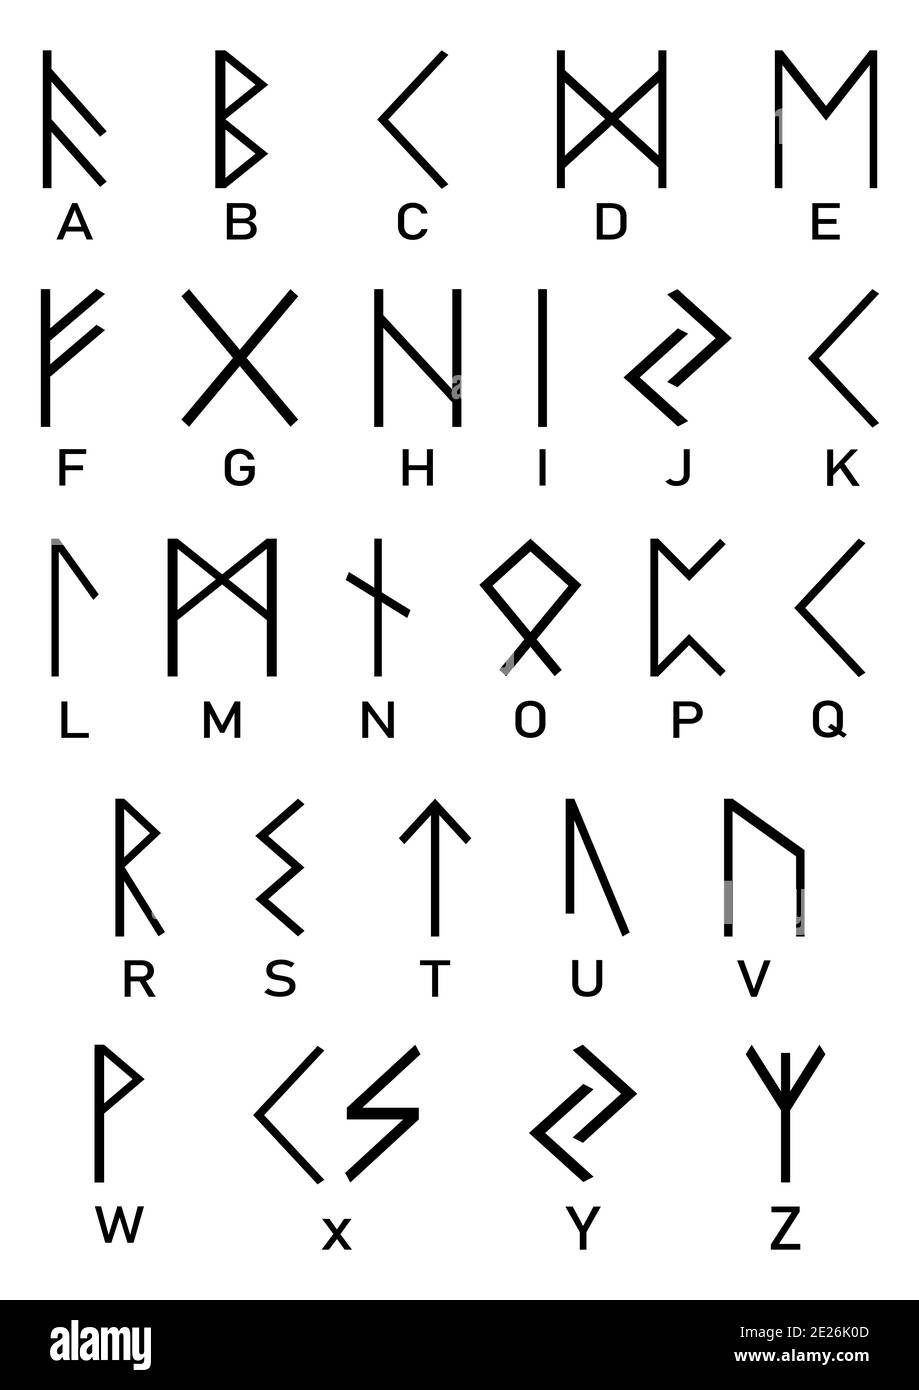 Simboli vichinghi in bianco e nero. Vecchie lettere rune e le loro controparti in alfabeto latino. Rune nere su sfondo bianco. Foto Stock